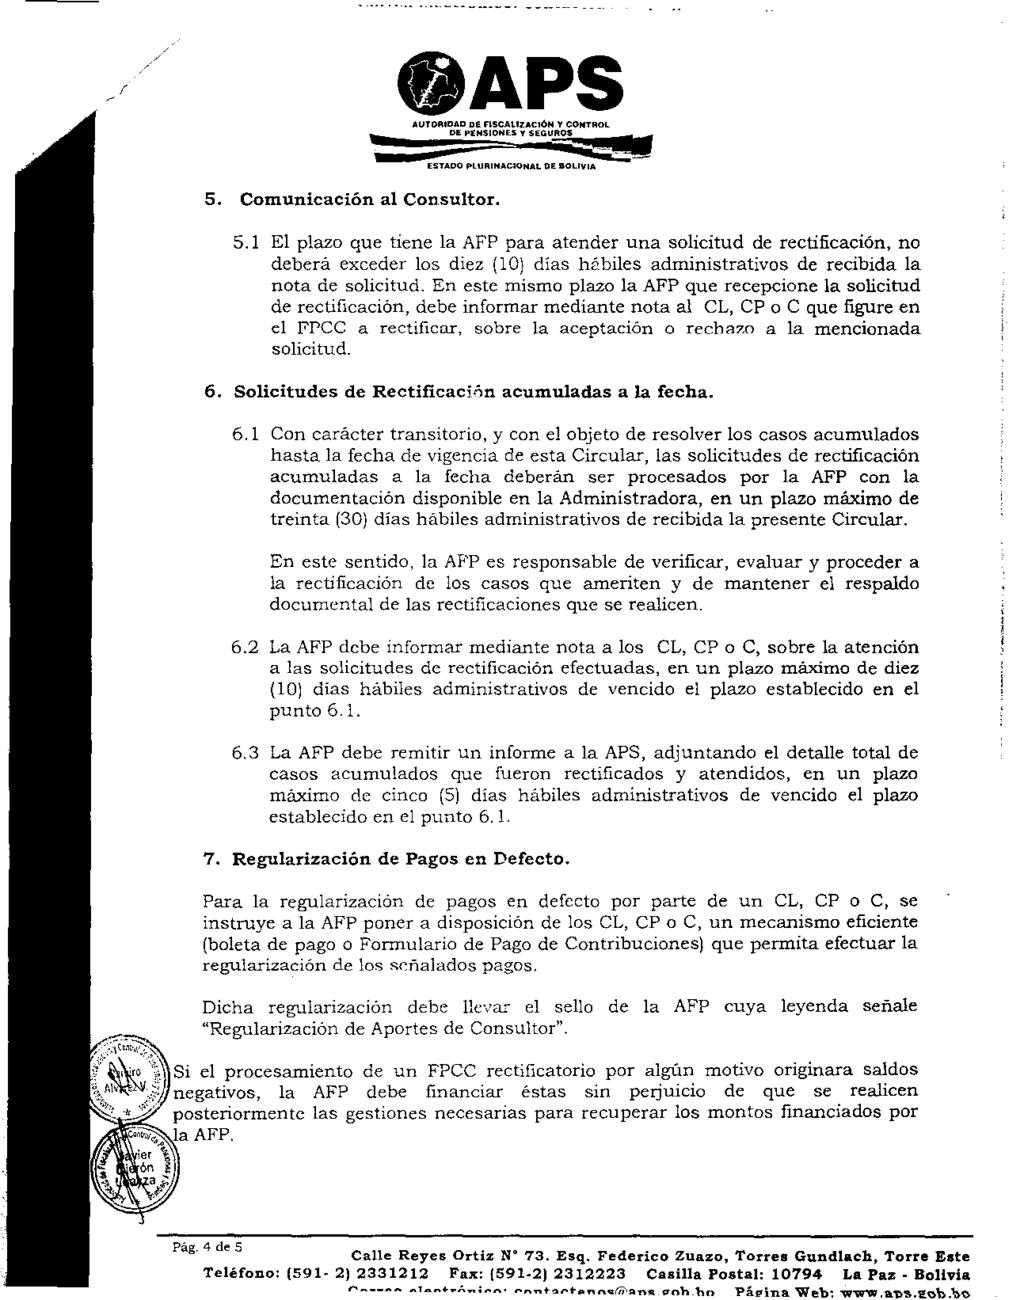 OAPS AUTORIDAD DE flscaulac1ón Y CONTROL DE PENSIONES T SEGUROS ESTADO PLURINACIDNAL DE BOLIVIA 5.